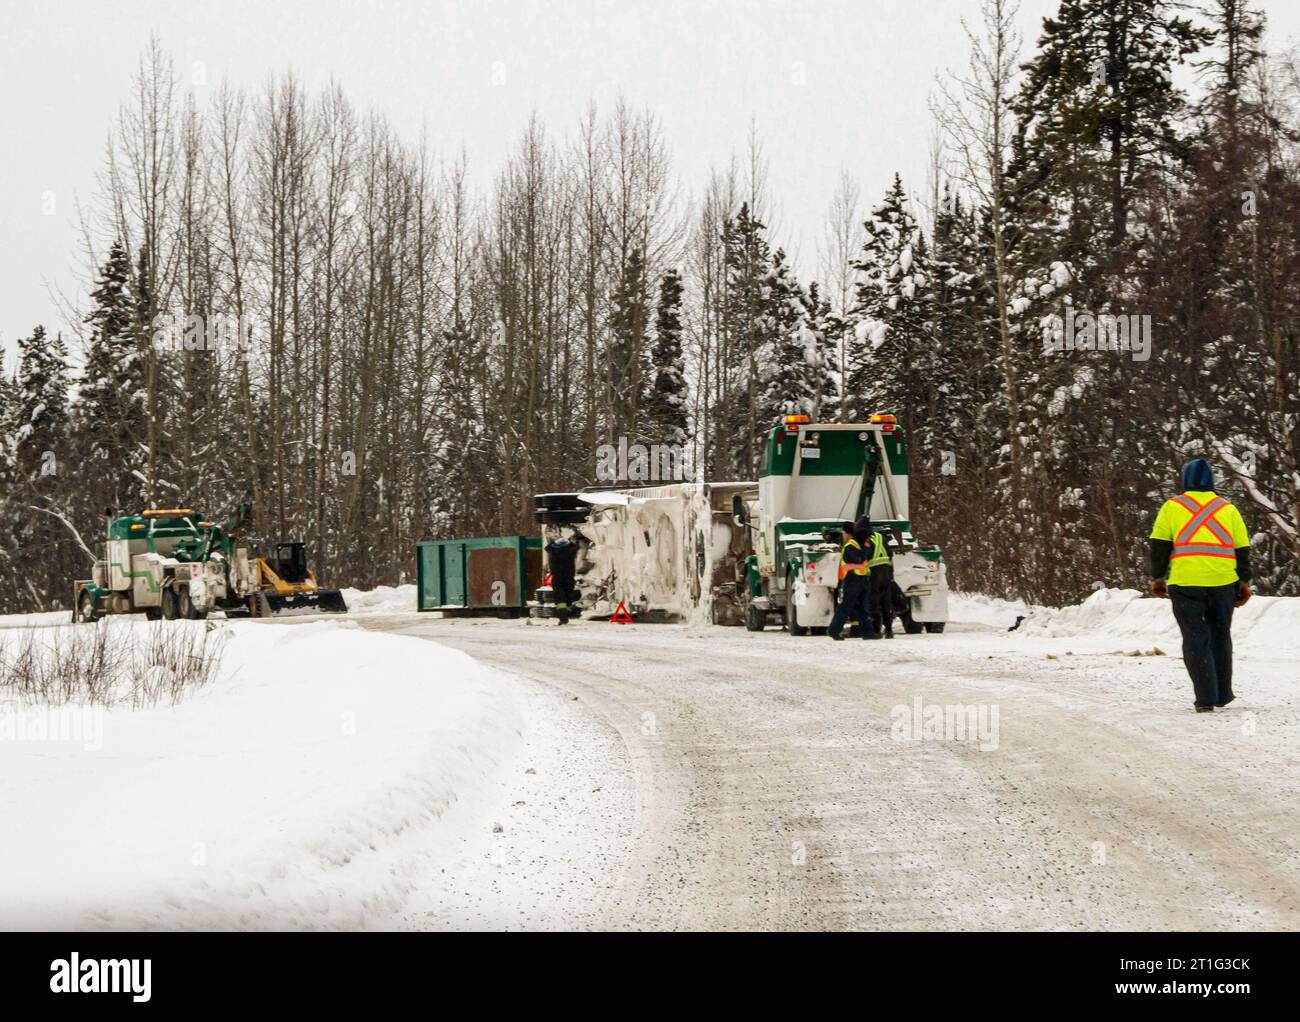 Accident de camion de transport sur la route no 37 dans le nord de la Colombie-Britannique, Canada, conditions routières hivernales, neige et glace. Route éloignée du Nord. Banque D'Images